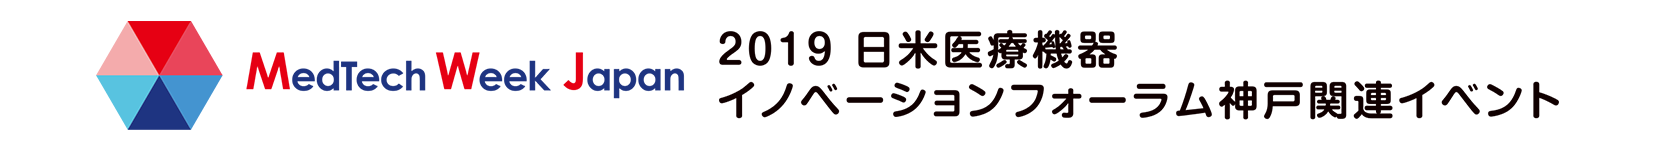 2019 日米医療機器 イノベーションフォーラム神戸関連イベント